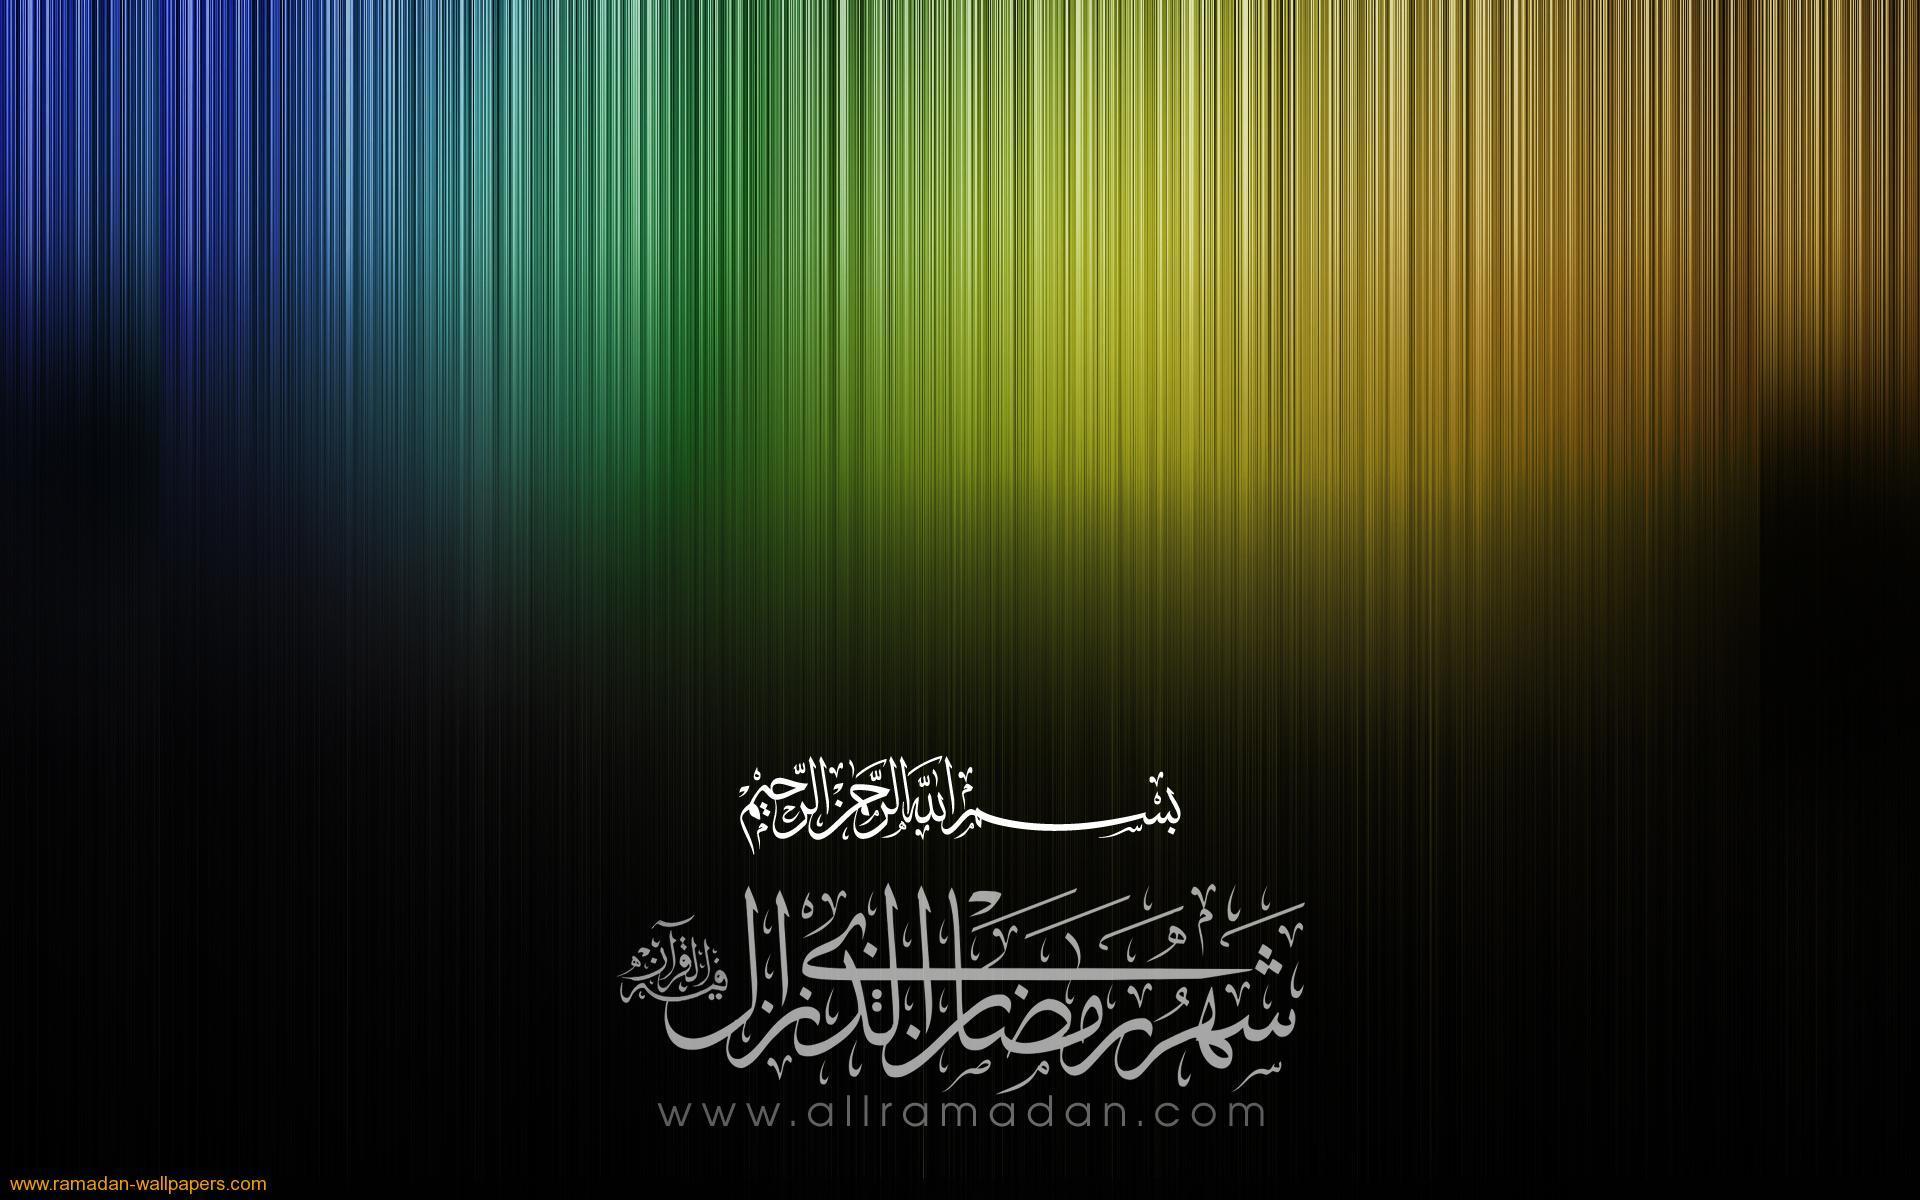 Quran wallpaper